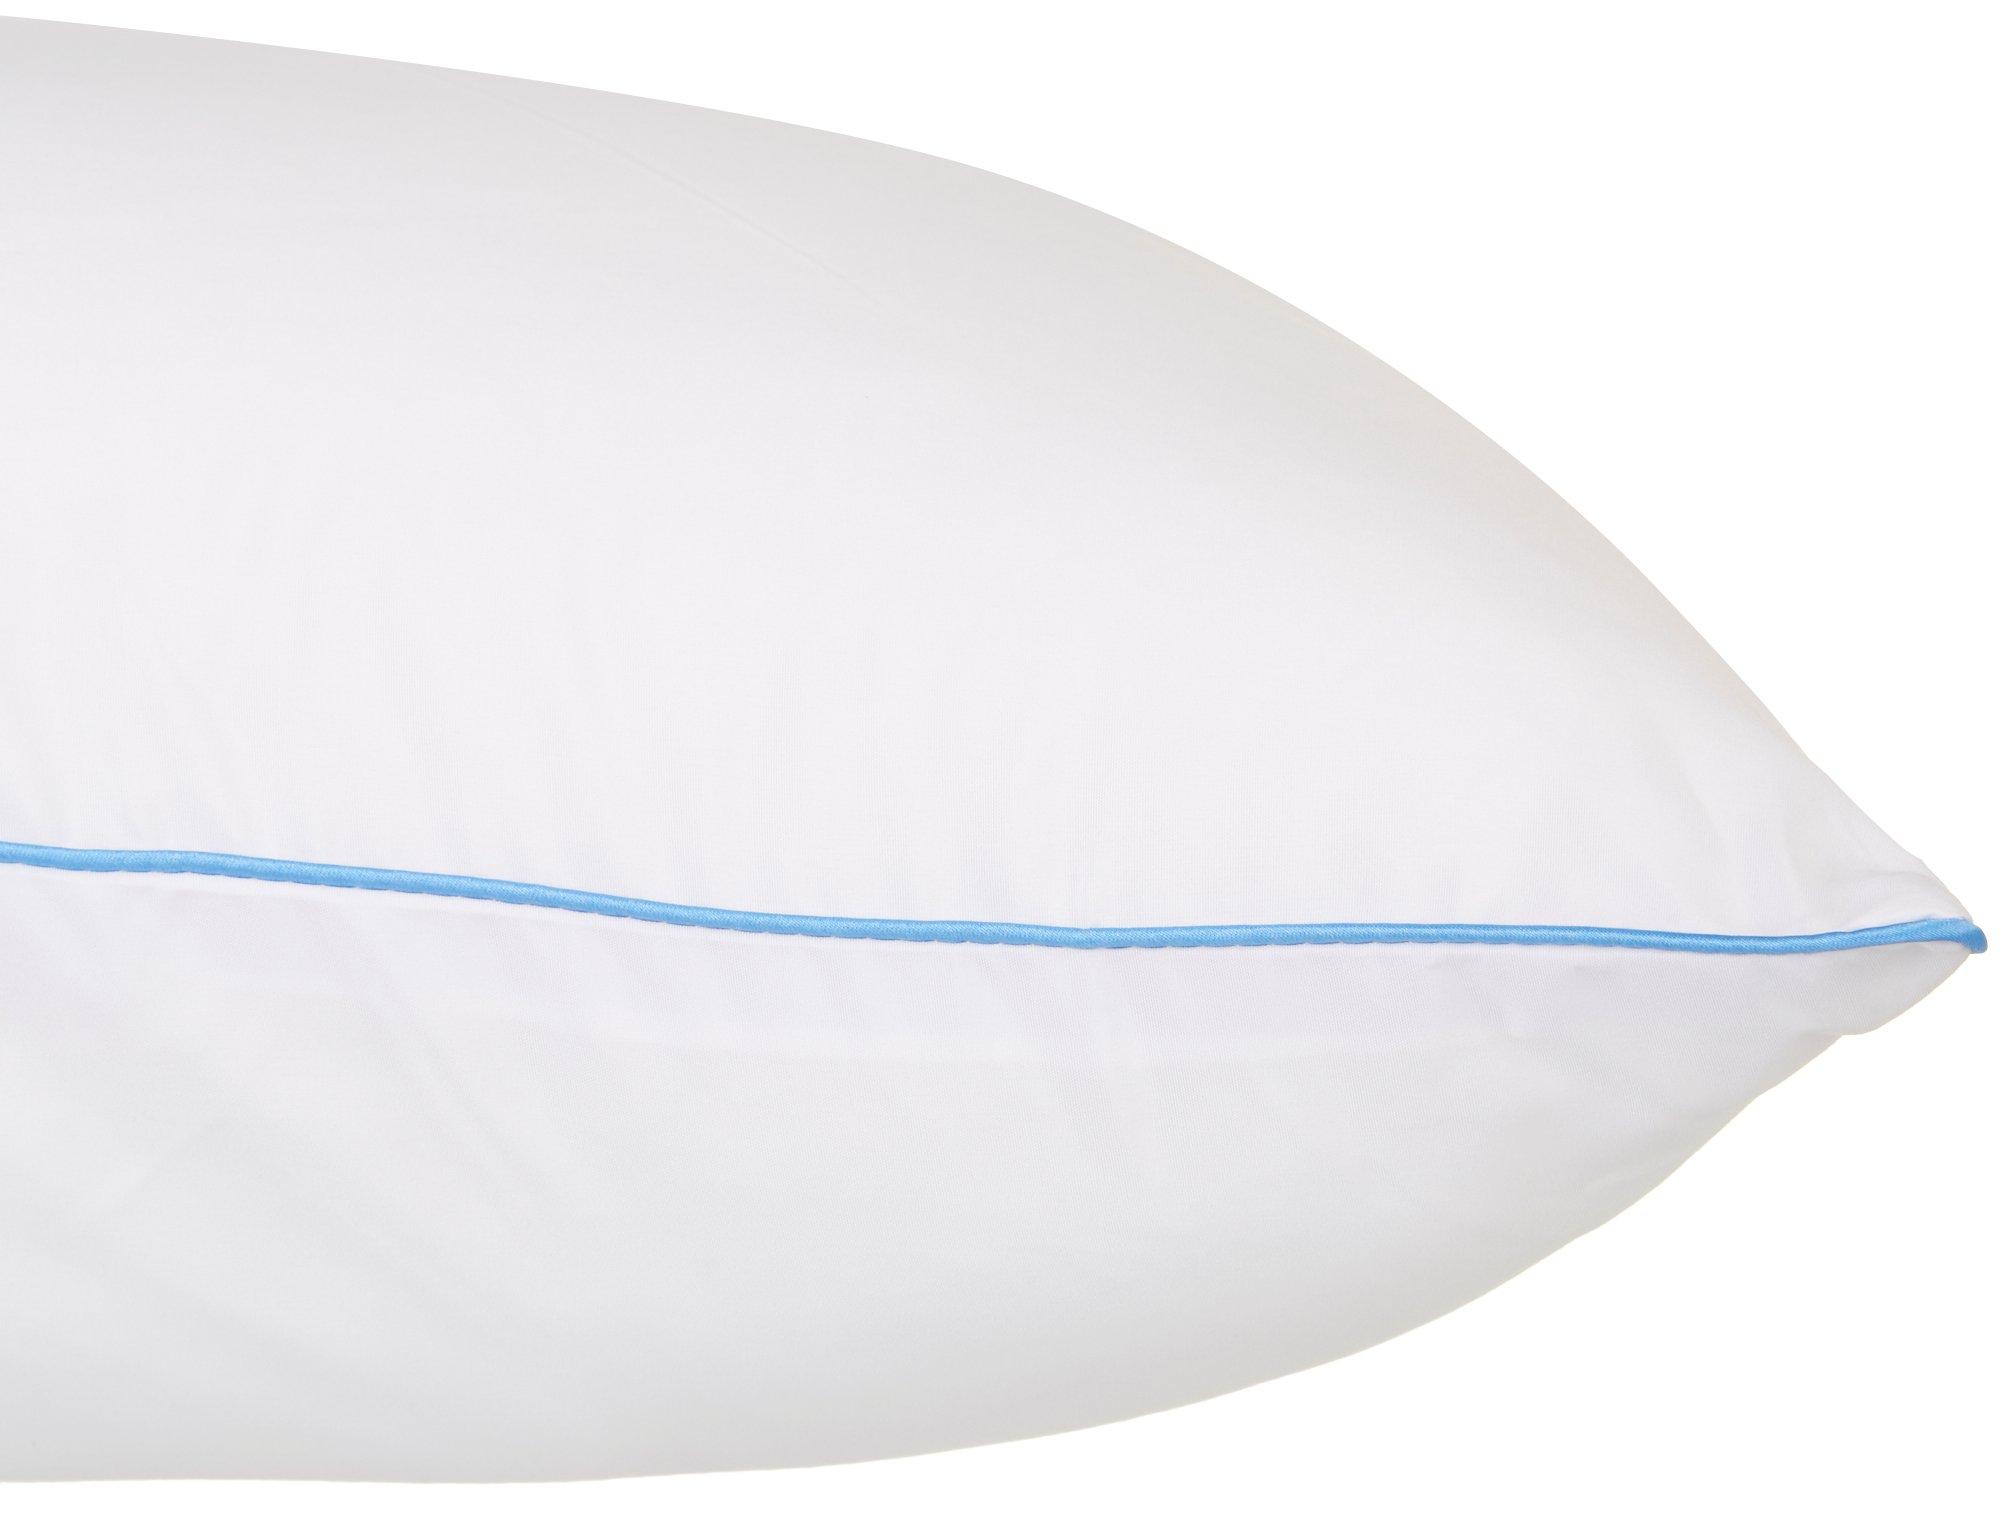 Nautica Clearview Chevron Breakfast Pillow Size One Size White Pillows Chevron Decorative Pillows